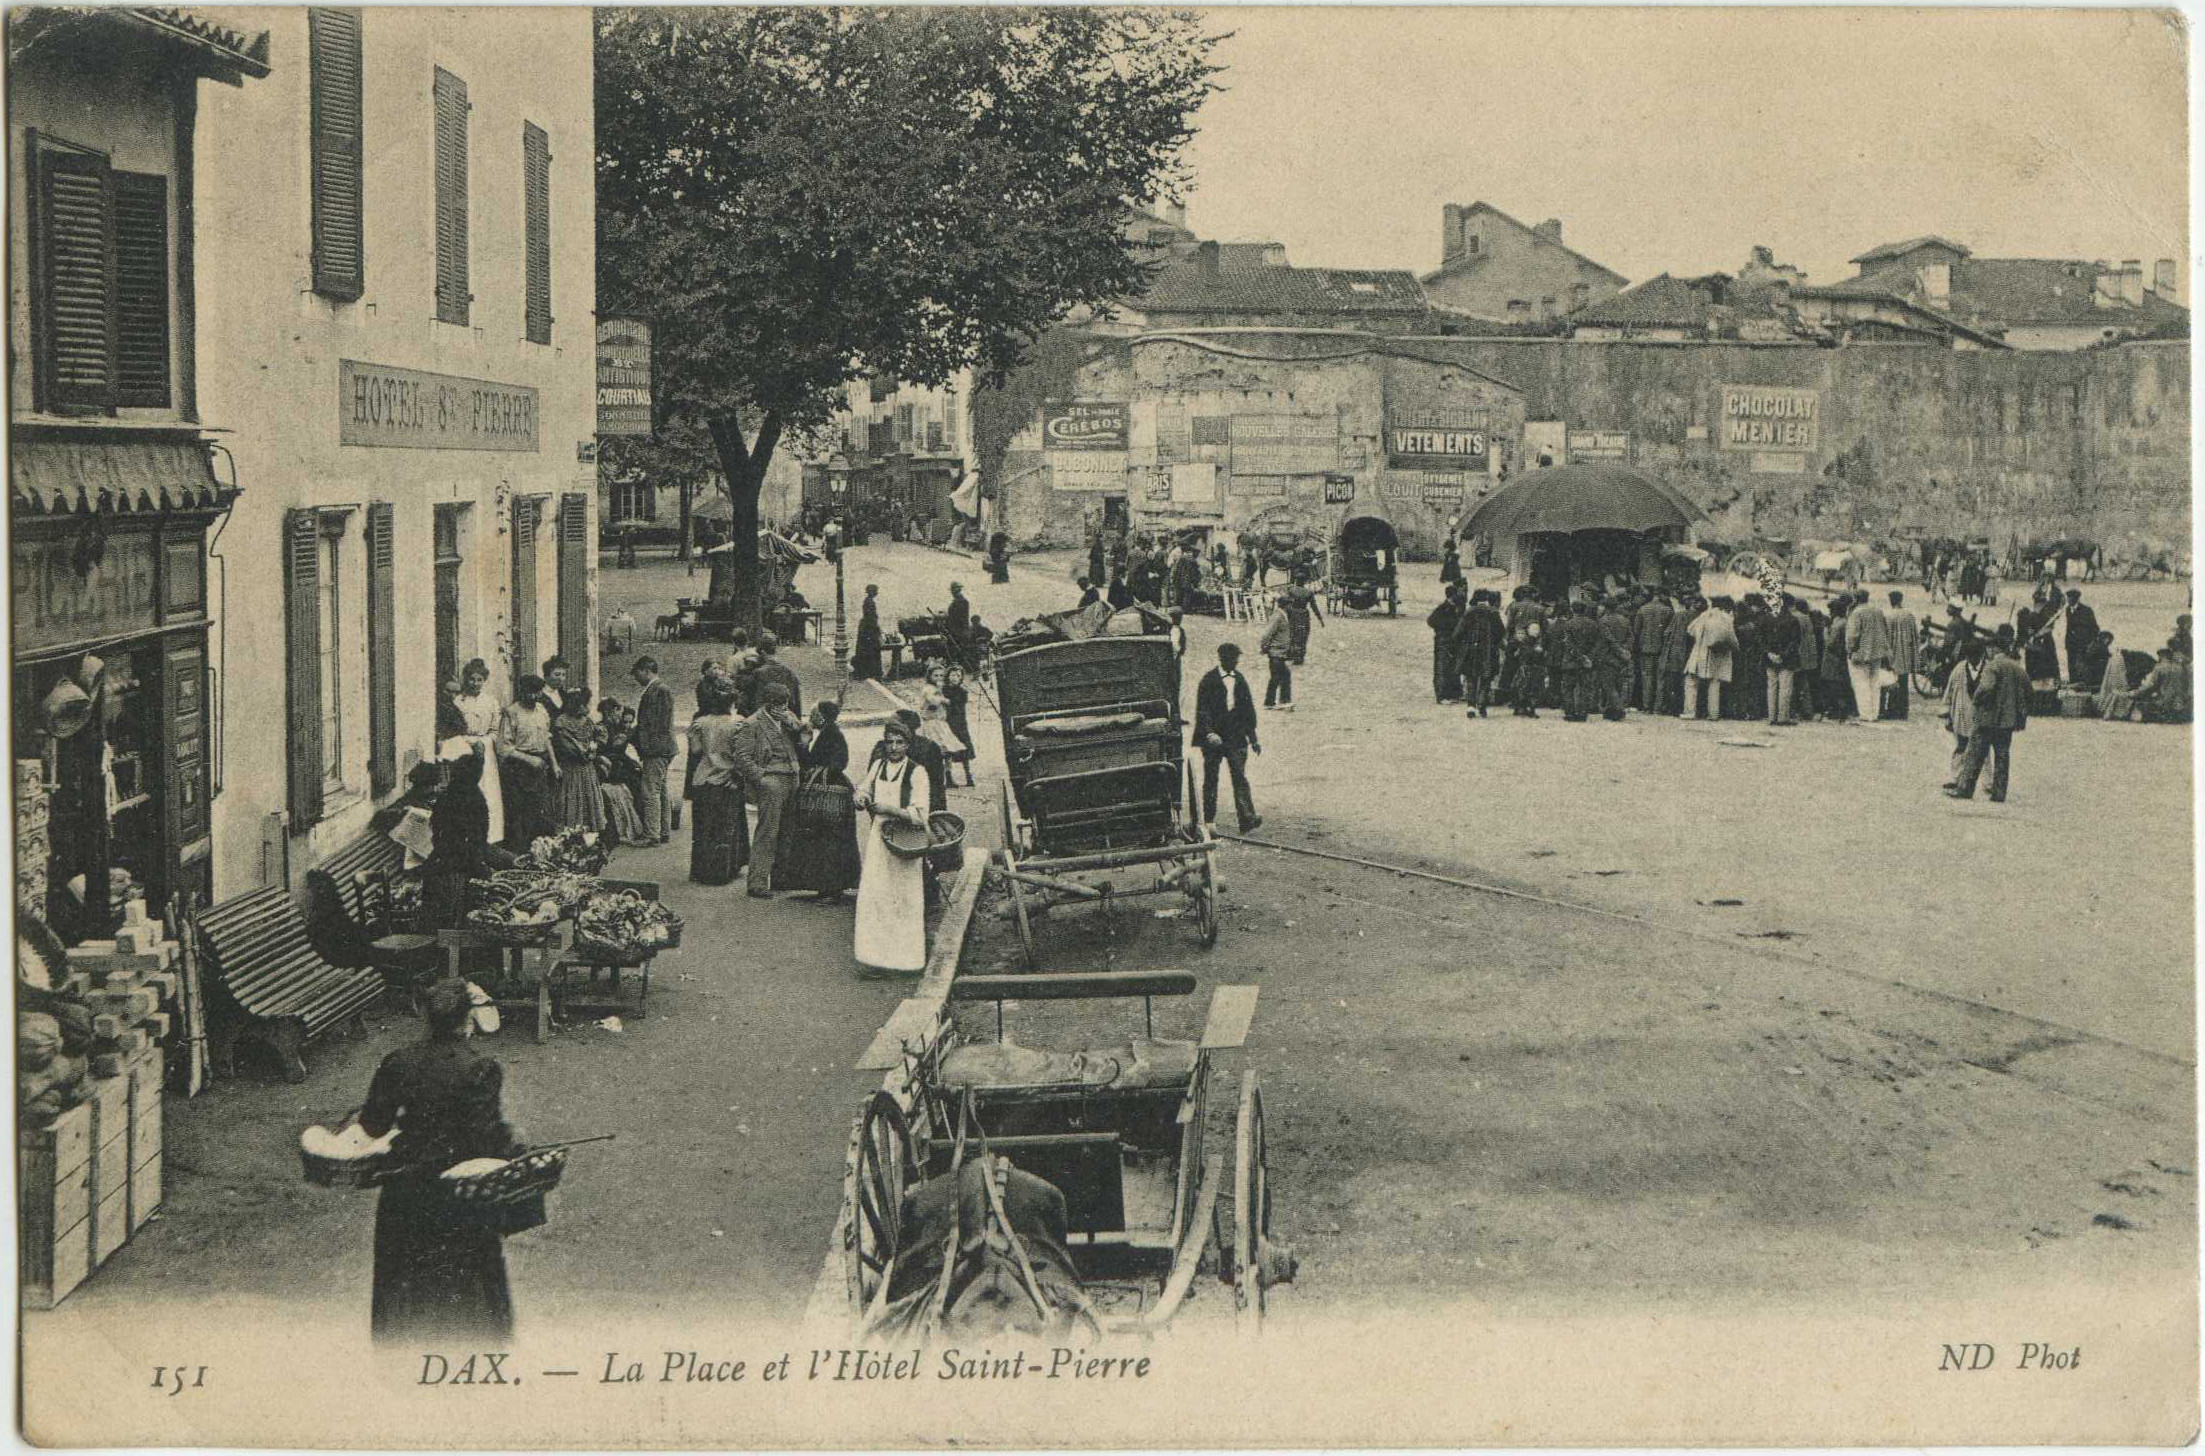 Dax - La Place et l'Hôtel Saint-Pierre